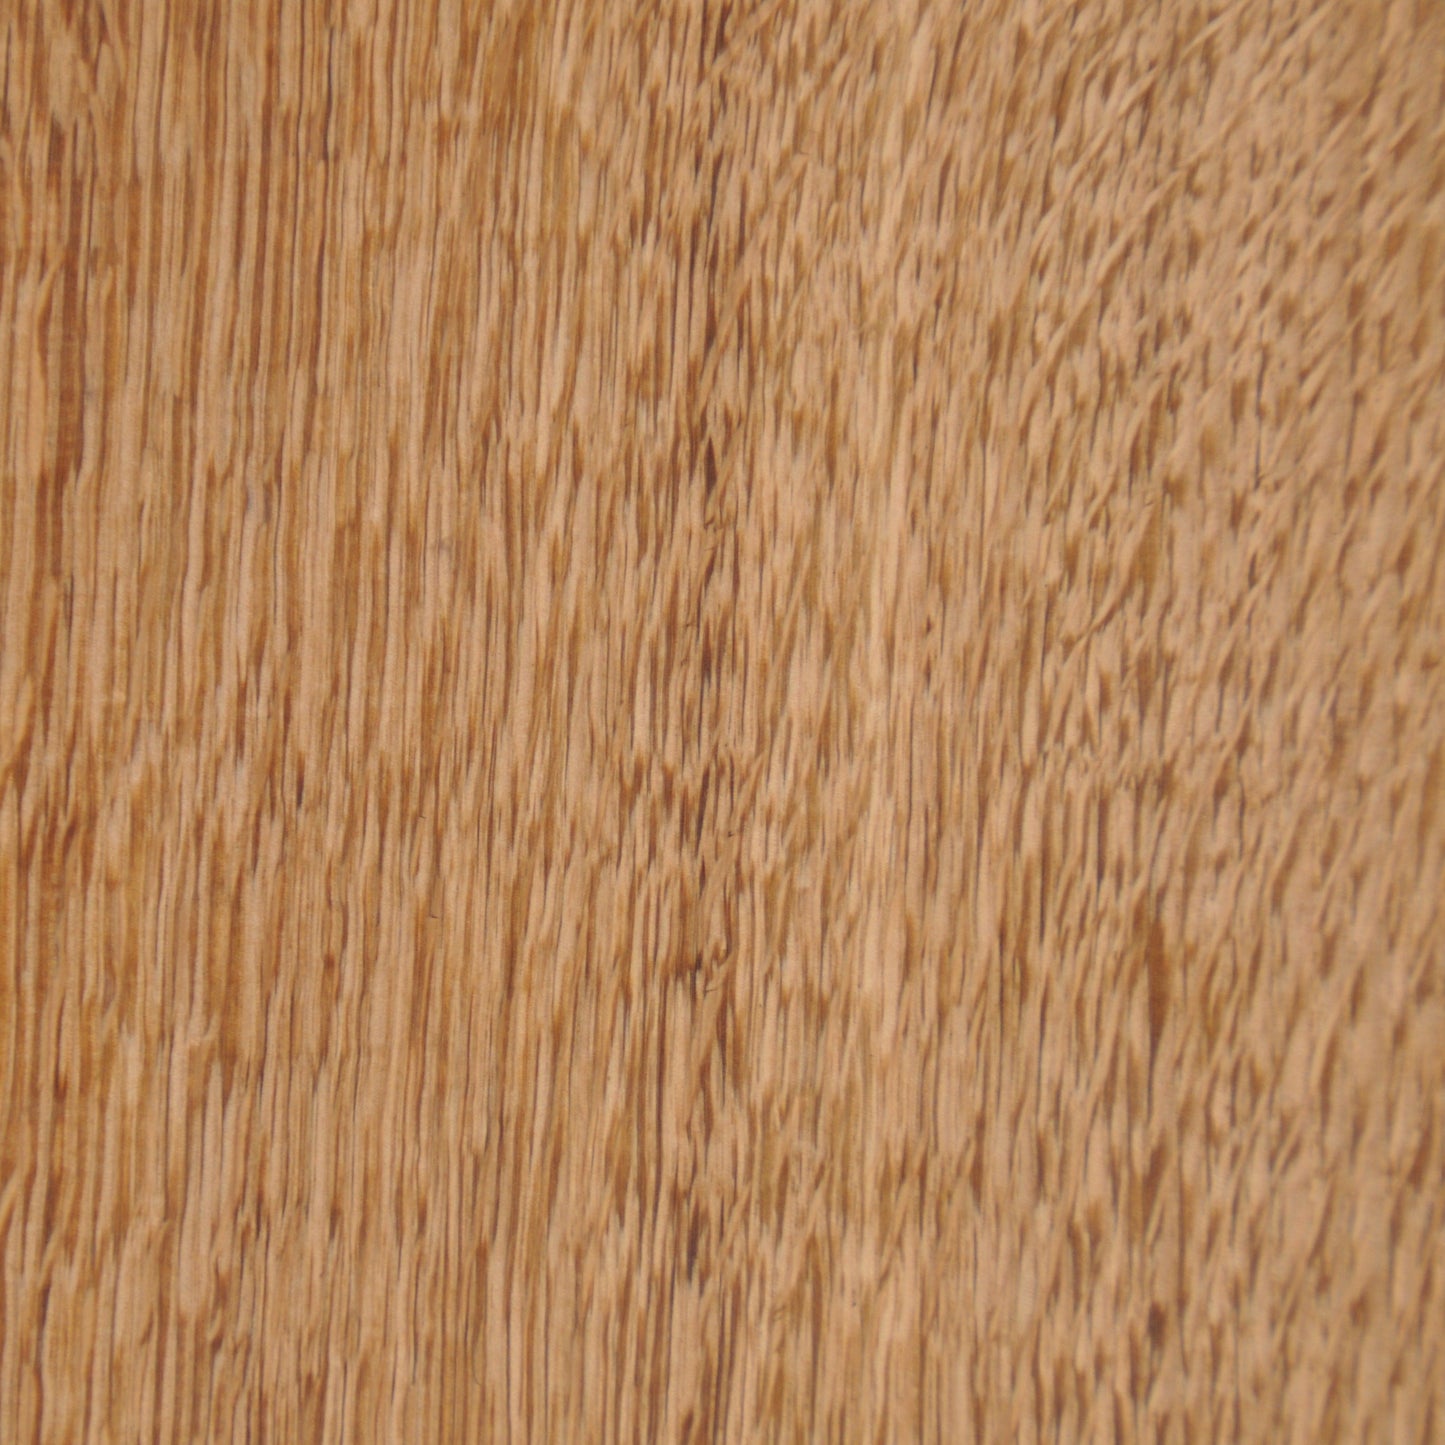 PRIOR SHOP English Oak Chopping Board